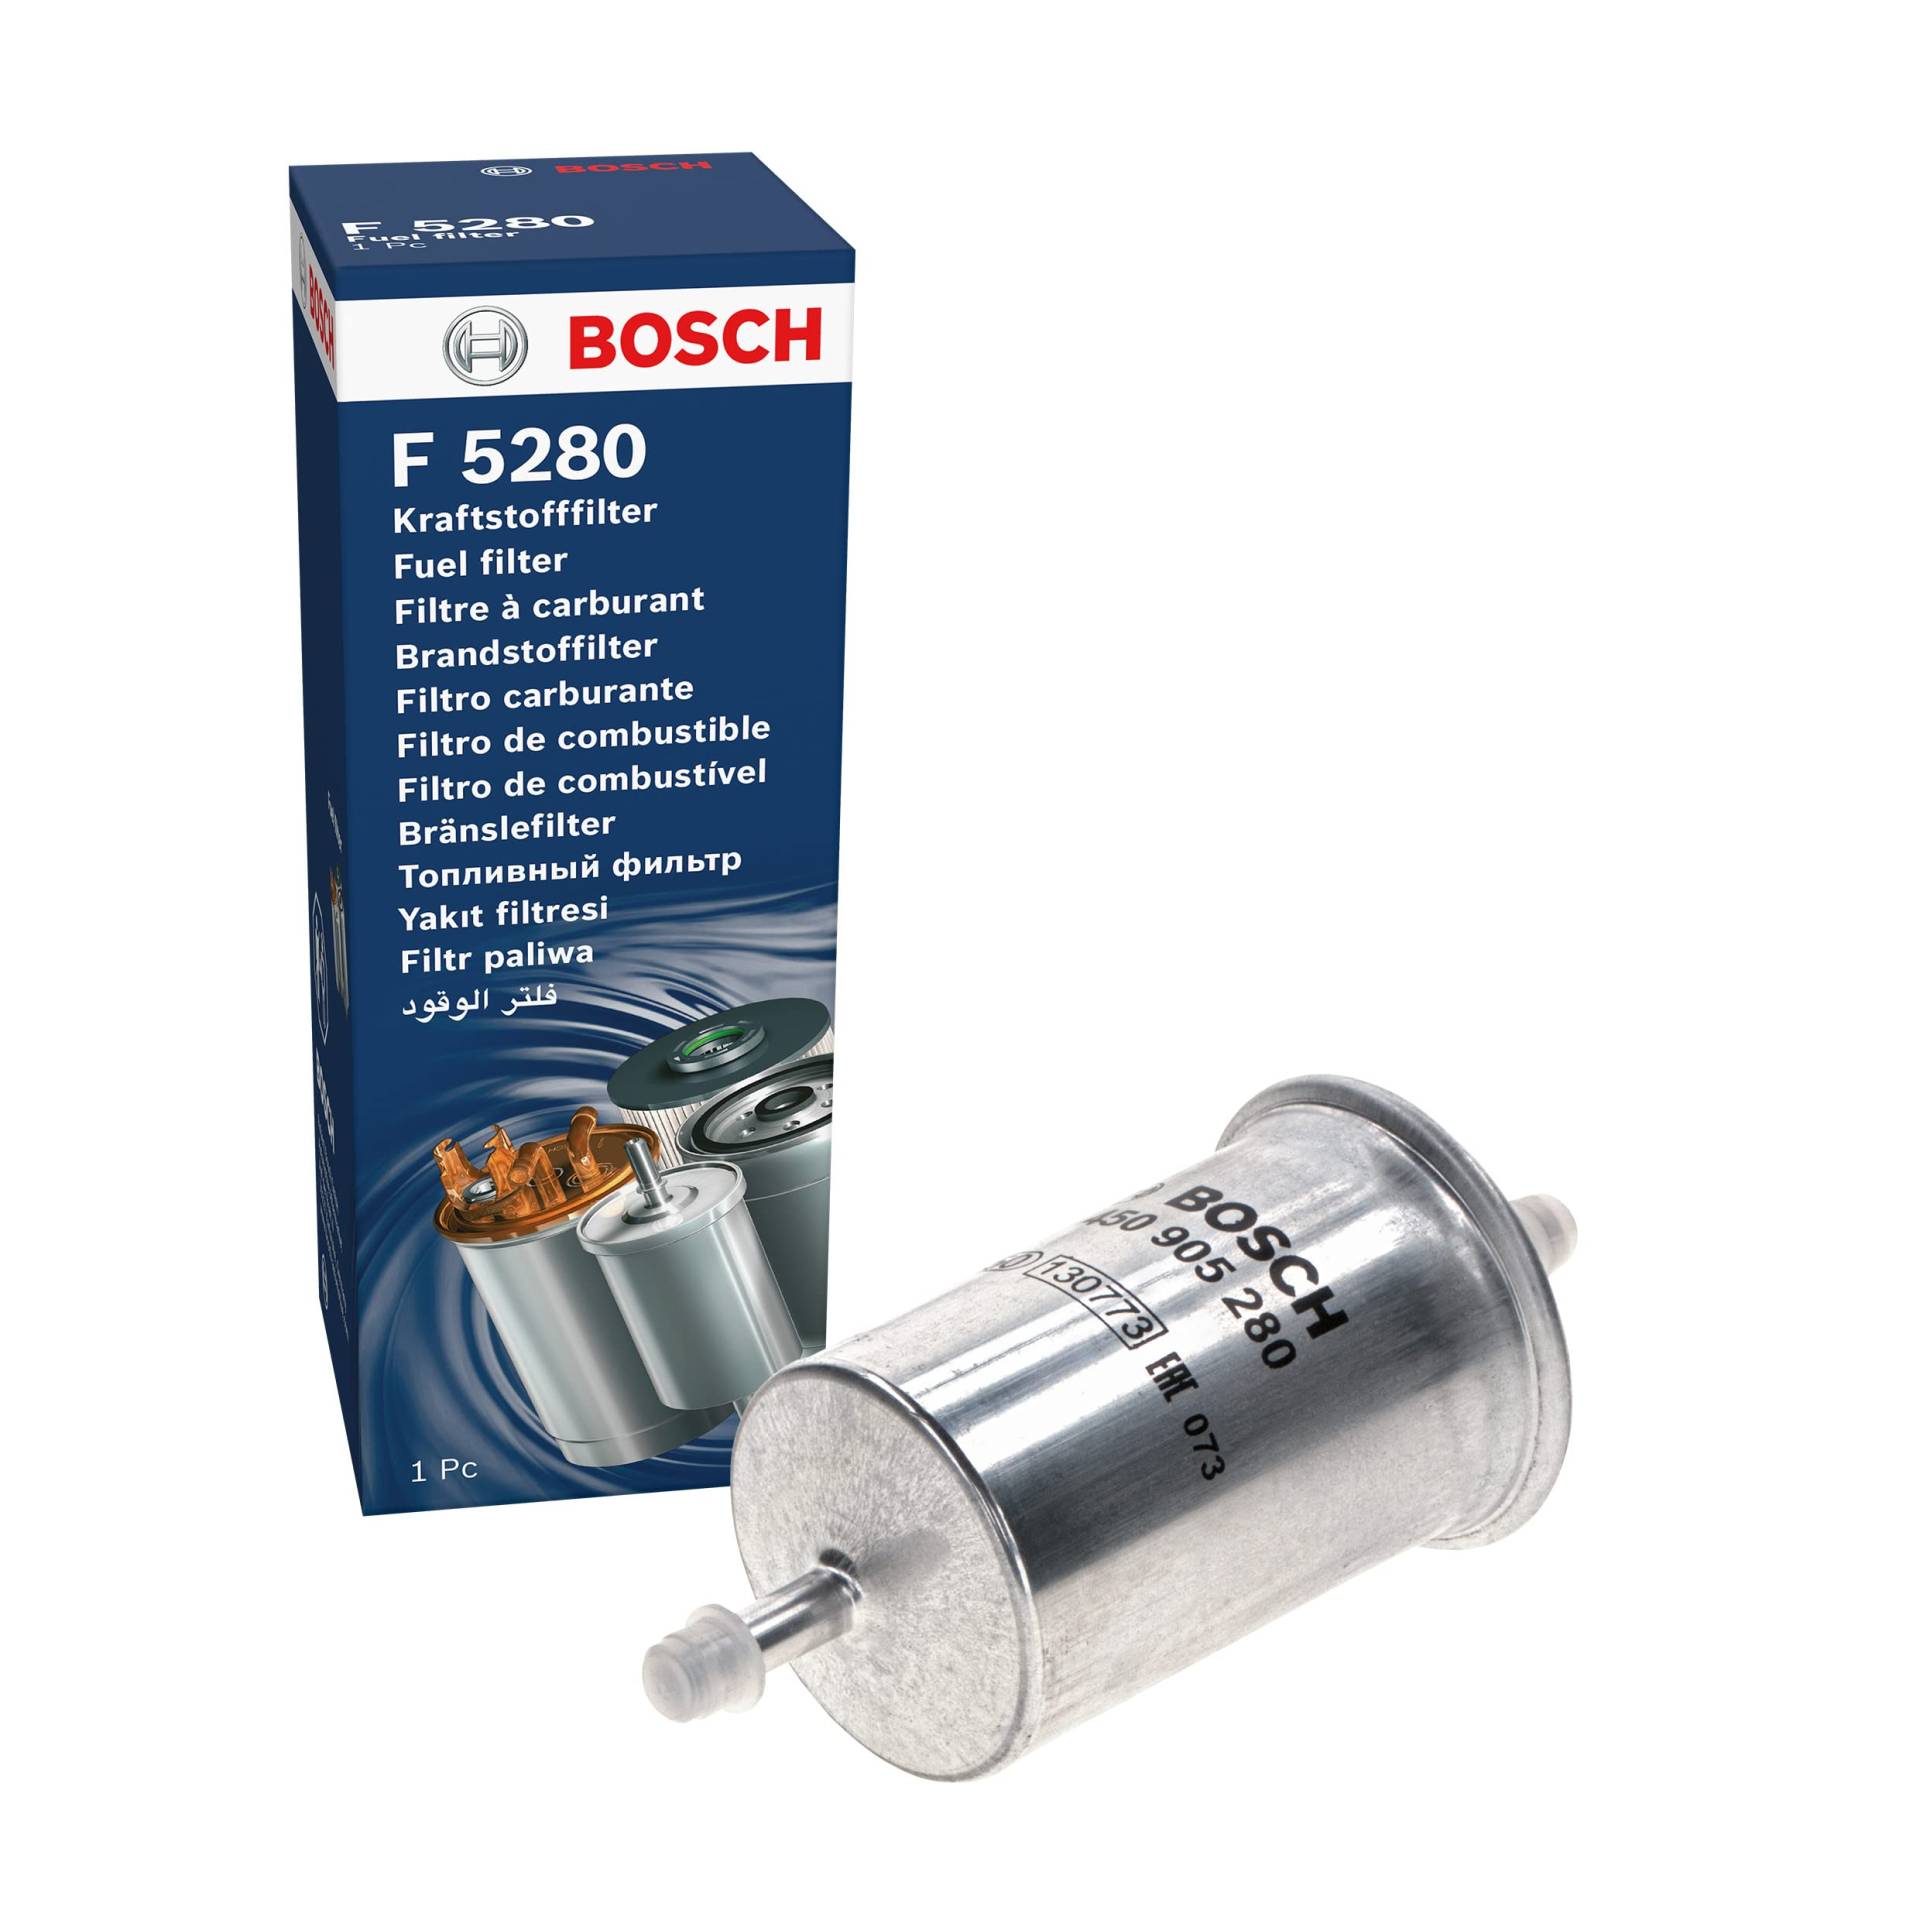 Bosch F5280 - Benzinfilter Auto von Bosch Automotive